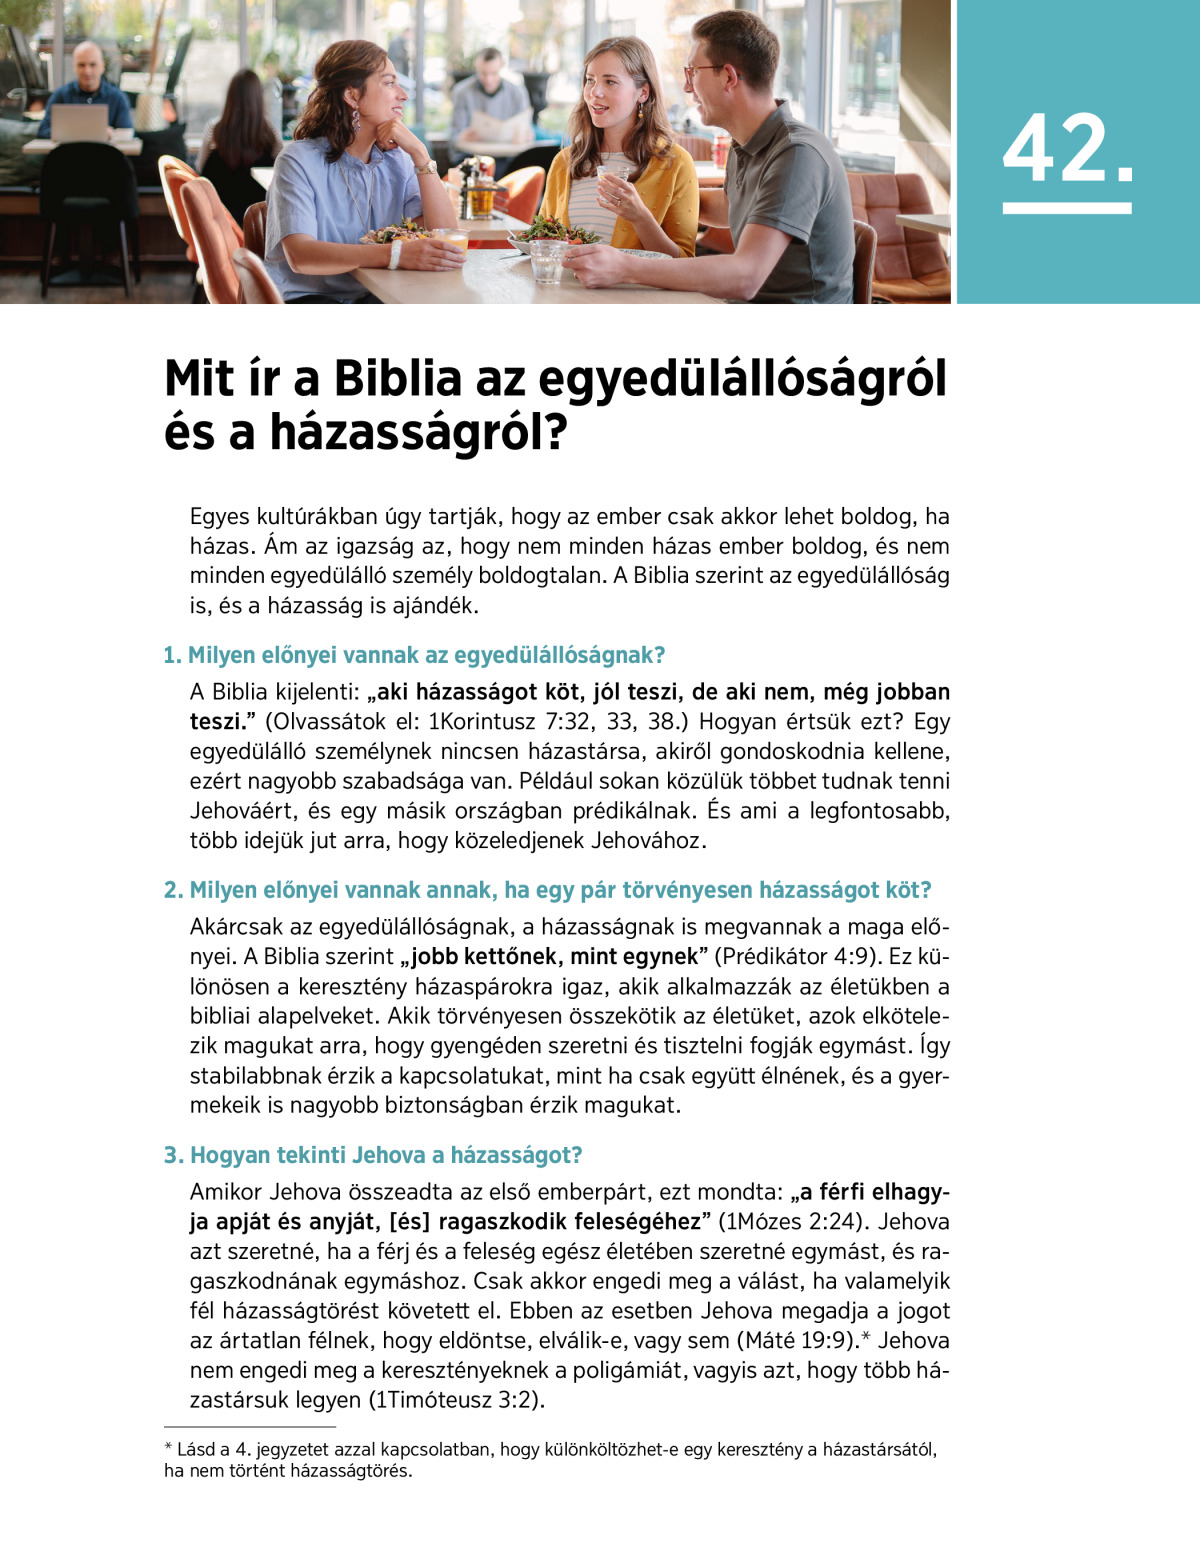 Tudja-e, hogy melyik az első magyar Biblia-fordítás?